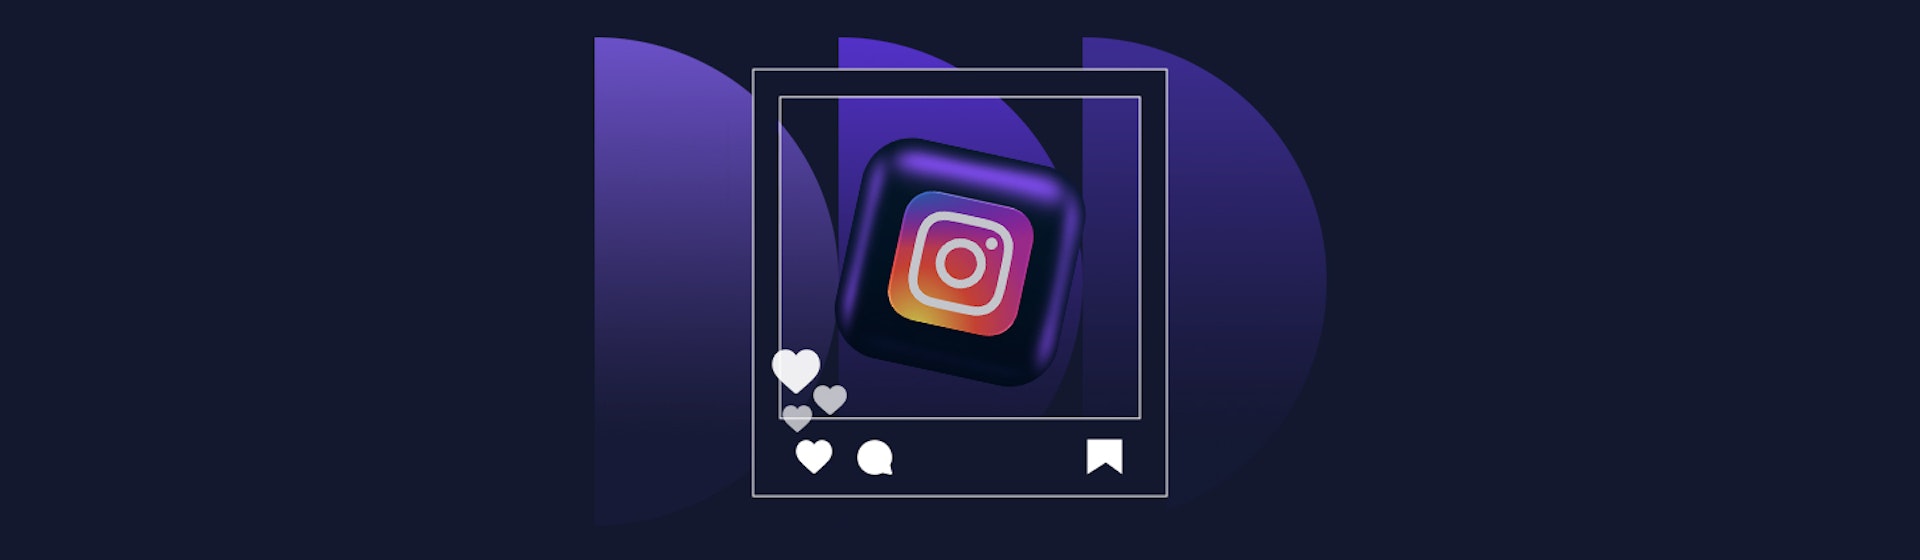 15 apps para Instagram que te ayudarán a promocionar tu negocio